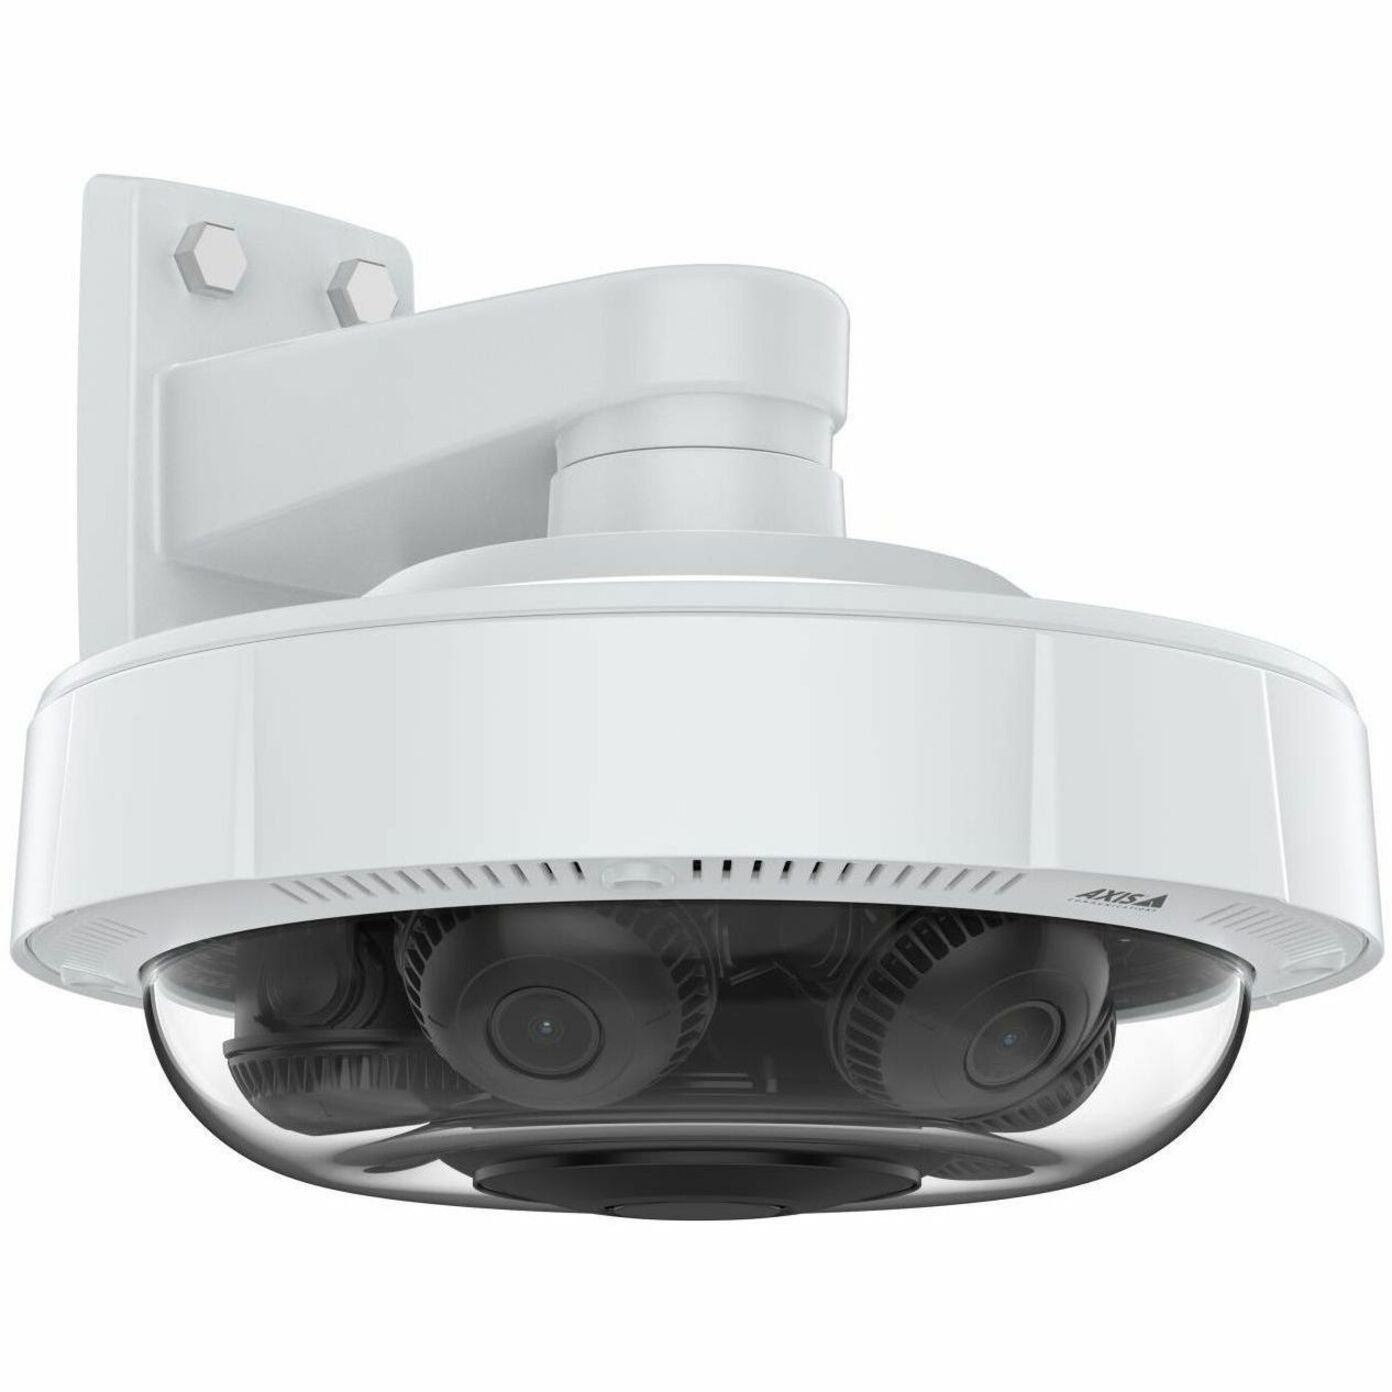 محور 02635-001 P3738-PLE كاميرا بانورامية 4K متعددة الاتجاهات مع تعلم عميق، عدسة متغيرة البؤرة، تكبير بصري 2.5x، تخزين بطاقة ذاكرة/سحابي، خارجية، حماية ضد الصدمات IK09، حماية دخول IP66/IP67 محور